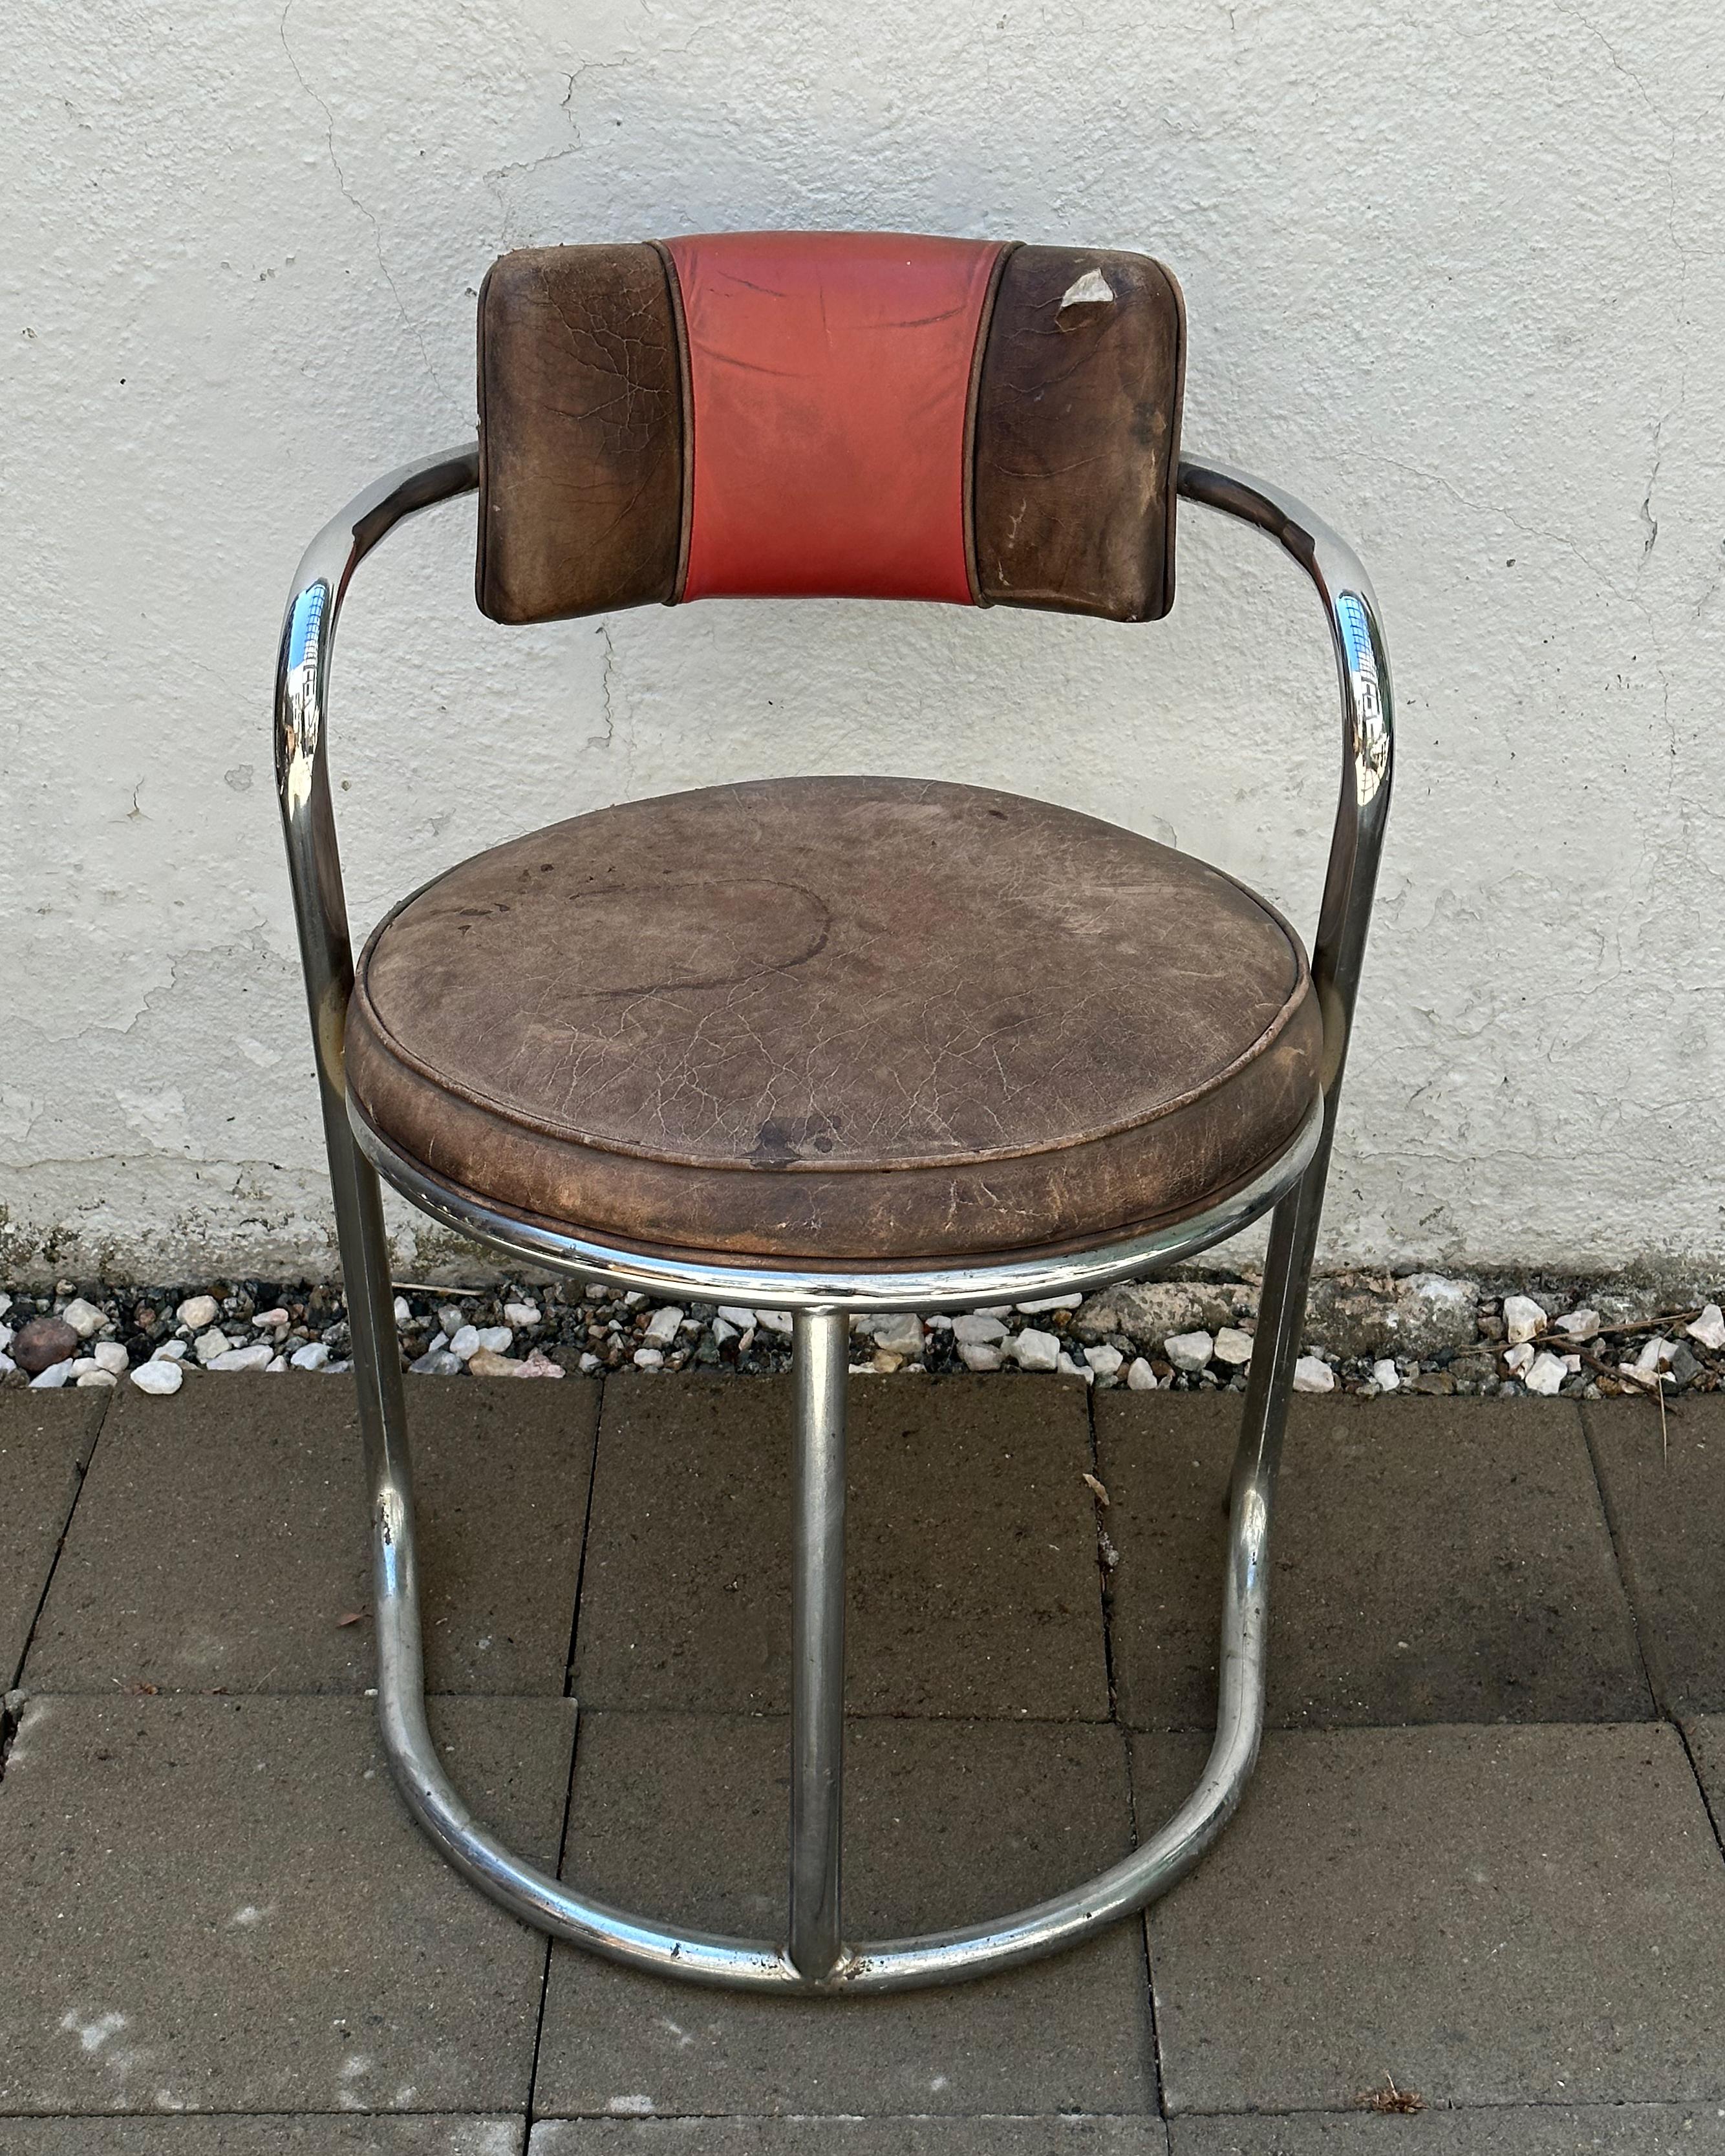 Découvrez le charme du renouveau Art déco des années 1970 avec cette chaise authentique produite par Jazz, une entreprise réputée pour sa fusion réussie de styles rappelant l'iconique Donald Deskey et Frank Lloyds Wright. Située au cœur du